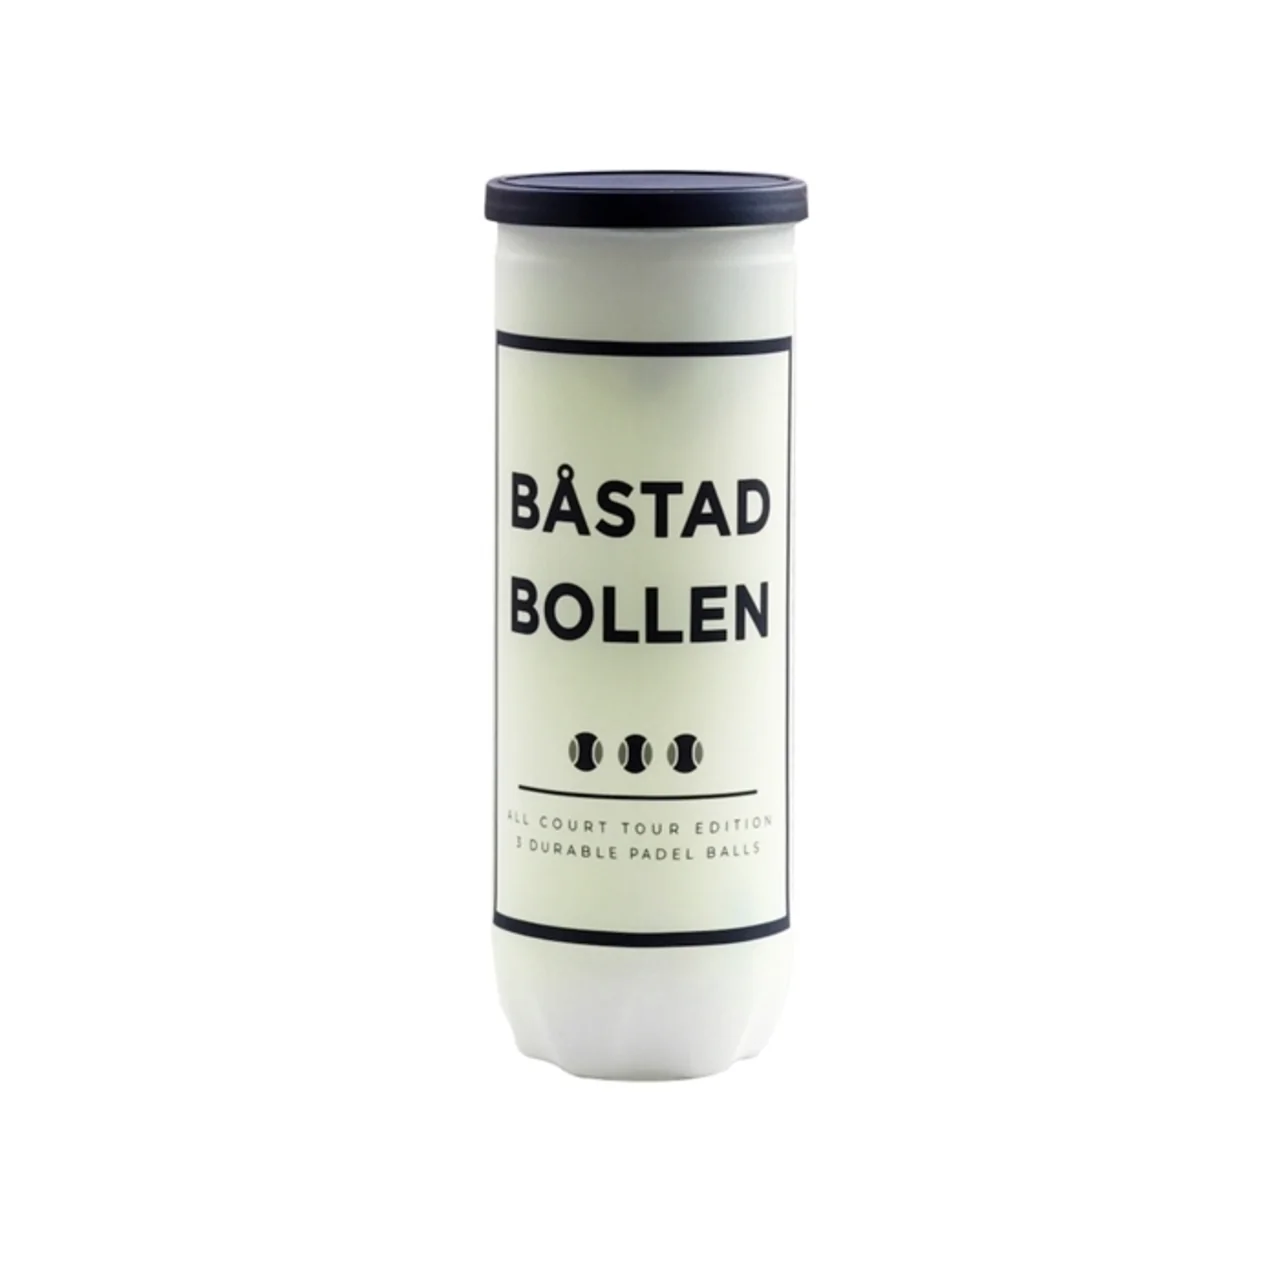 Båstad Bollen All Court Tour Edition Padel Ball 12 tubes